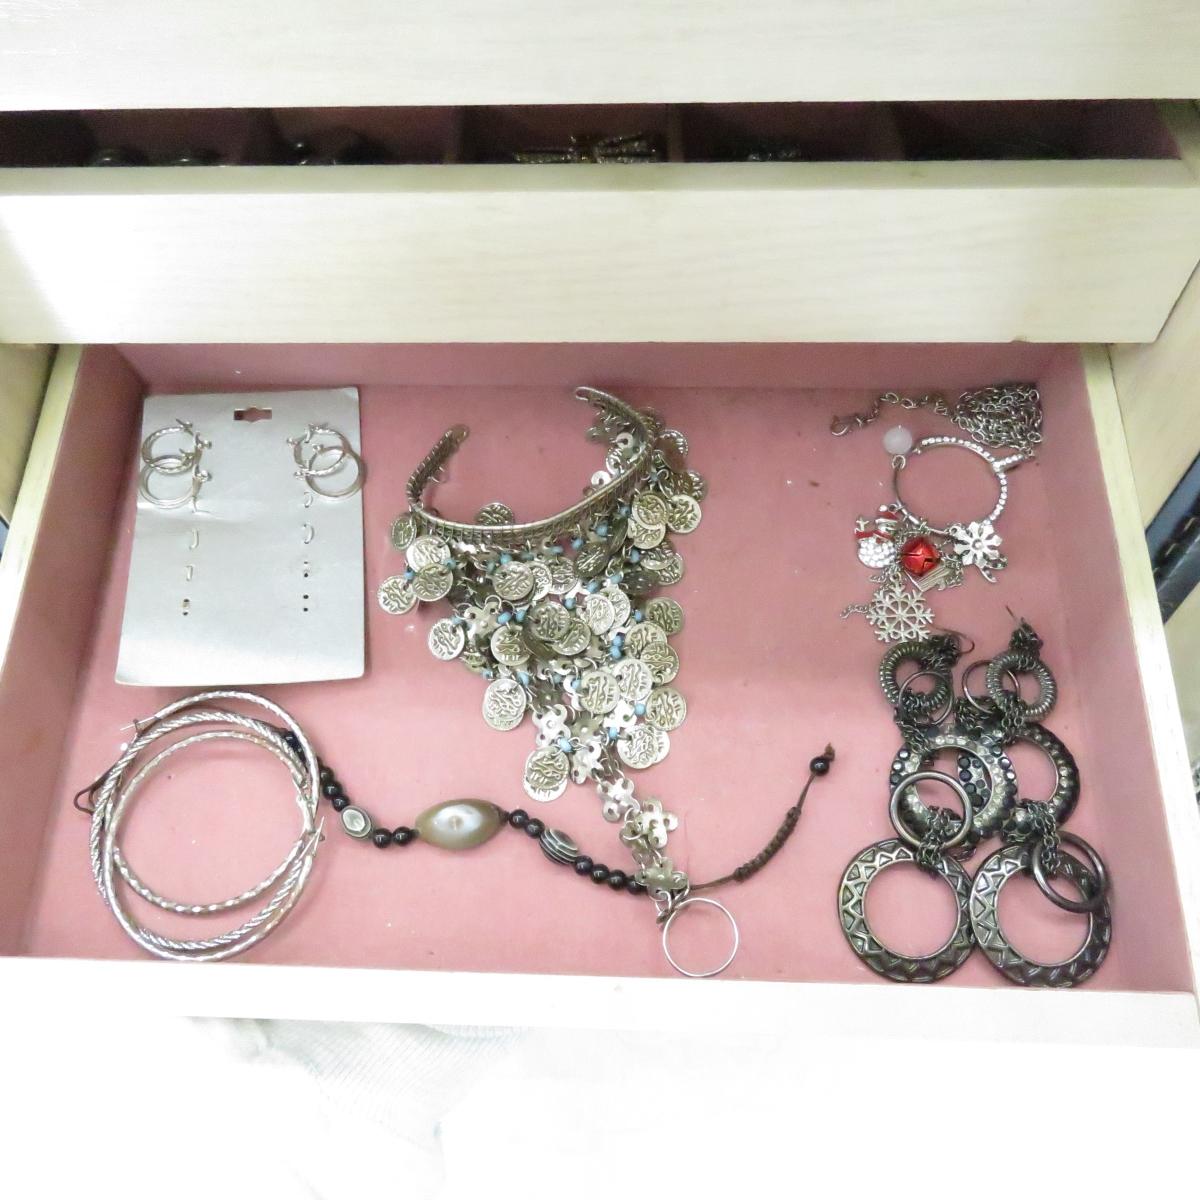 Large Wood Jewelry Box full of fashion jewelry